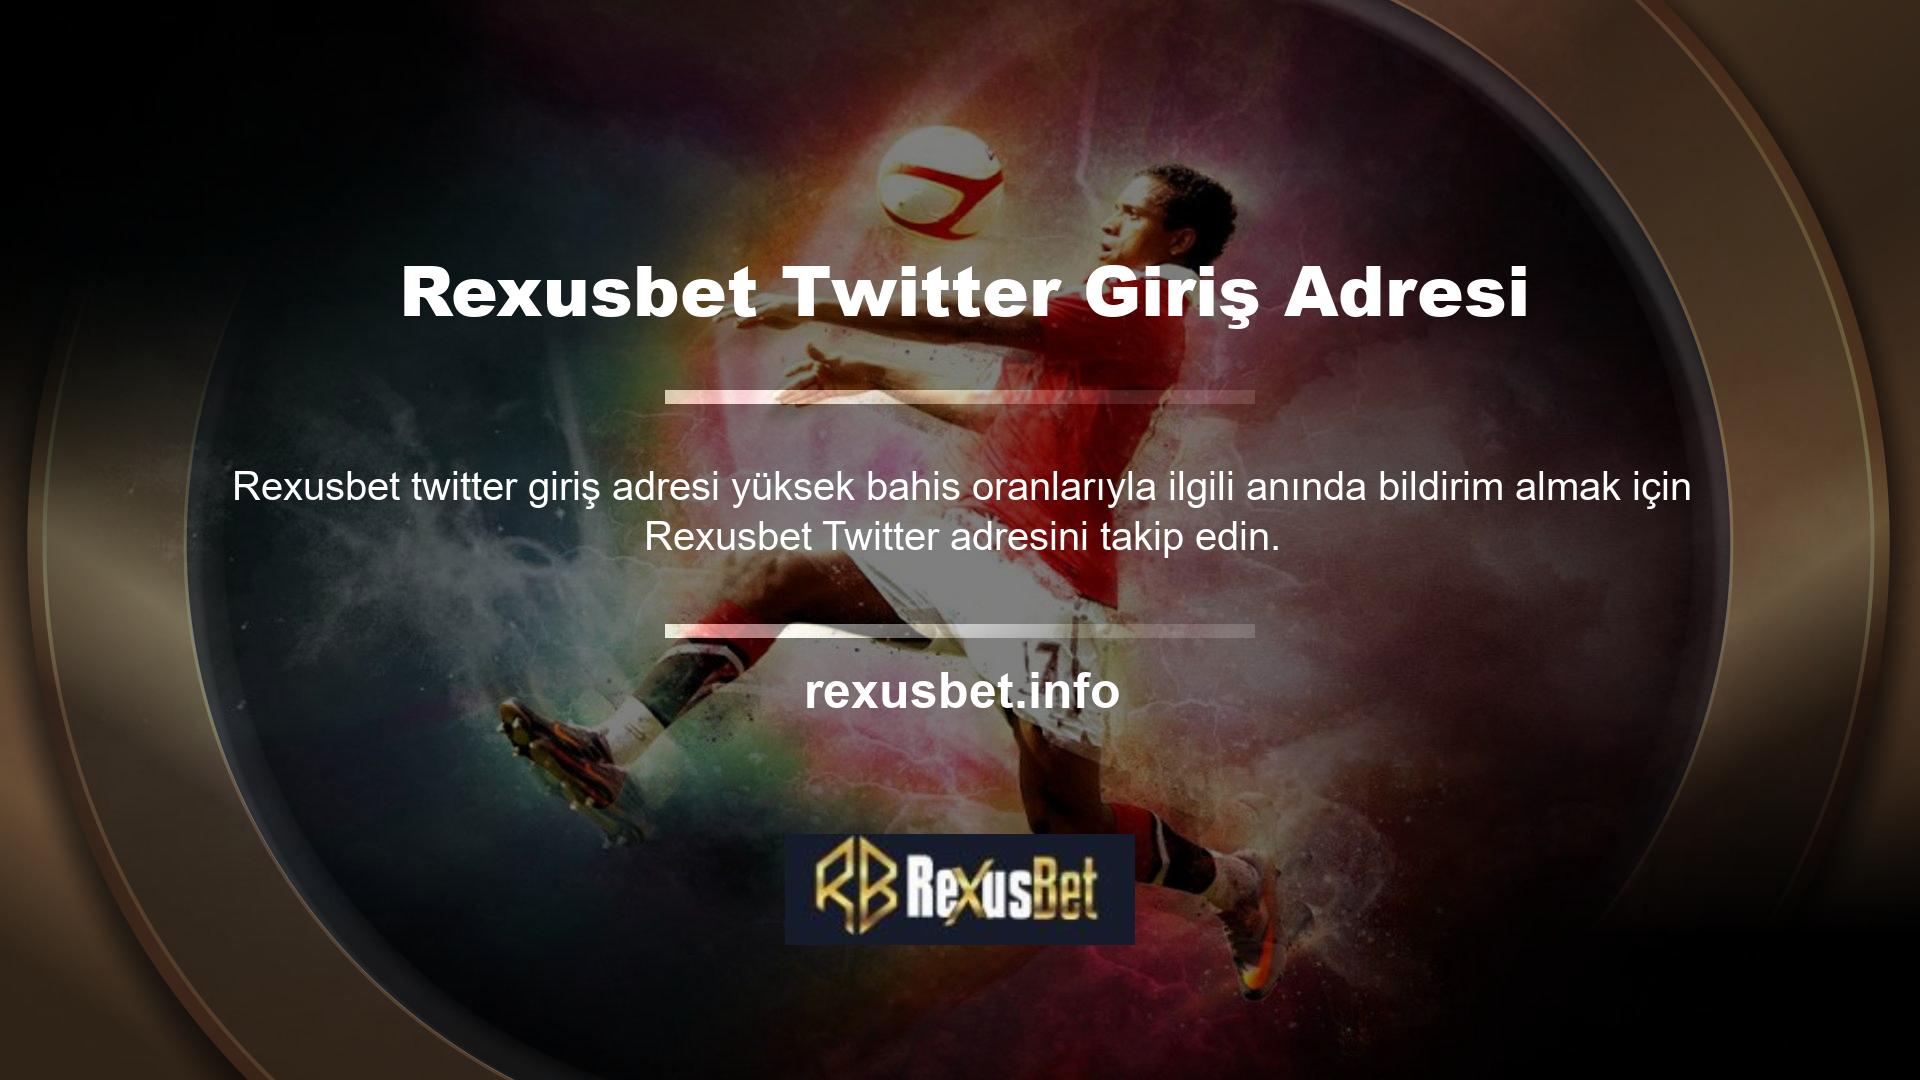 Rexusbet resmi Twitter adresi: @Rexusbet